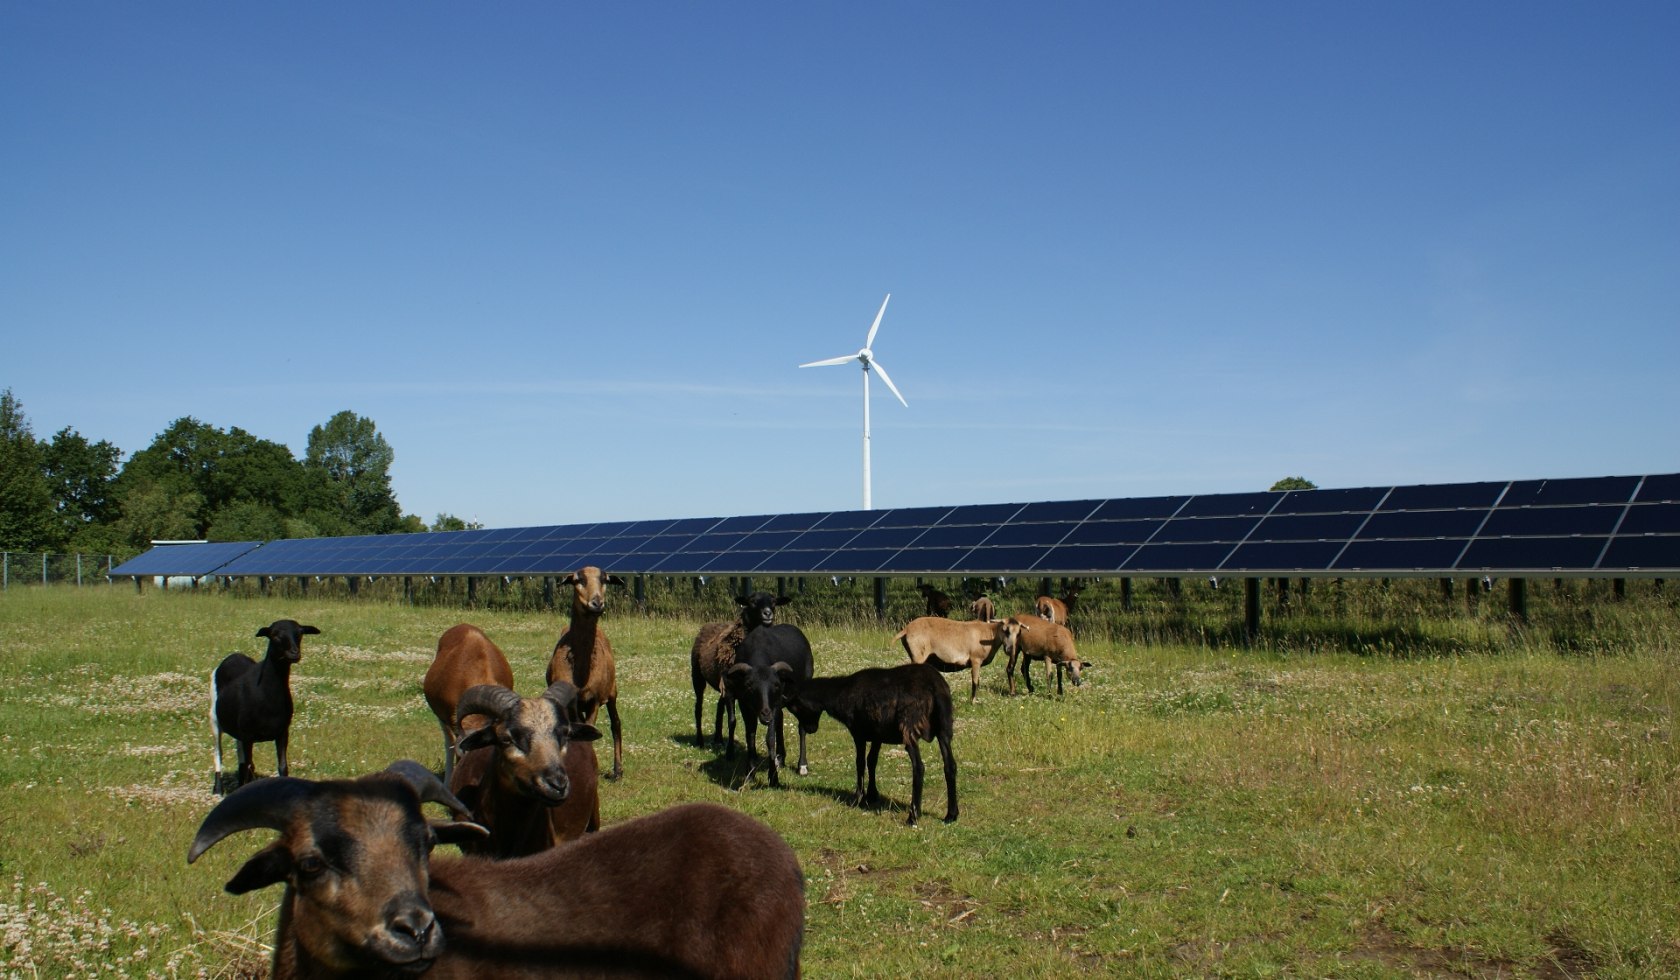 Kuhweide vor Solar und Windenergie, © Verkehrsverein Aurich / Marco Bordasch